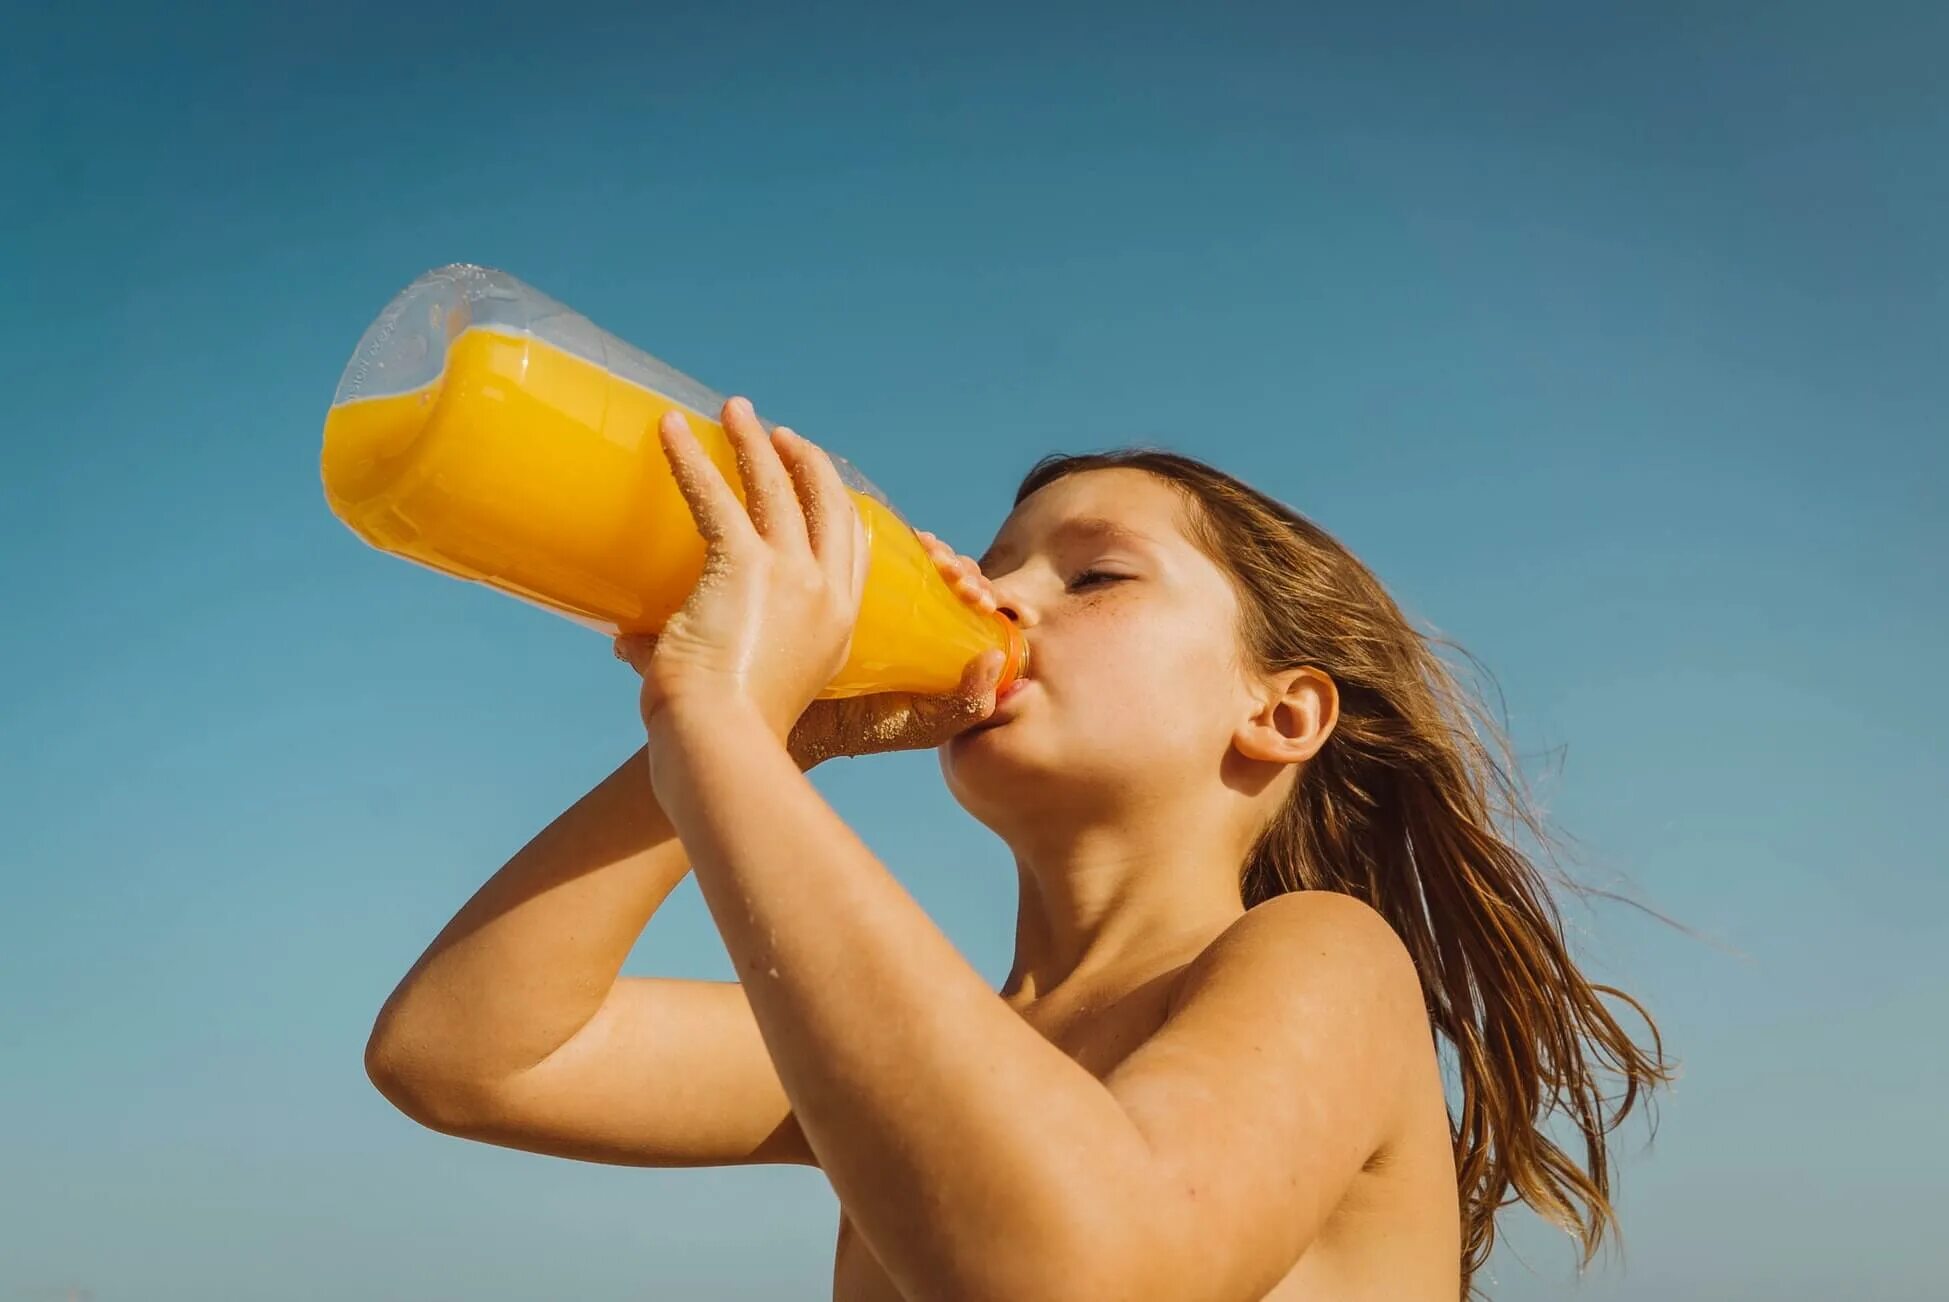 Пить сок. Пьет апельсиновый сок. Левушка пьёт апельсиновый сок. Люди с лимонадом.